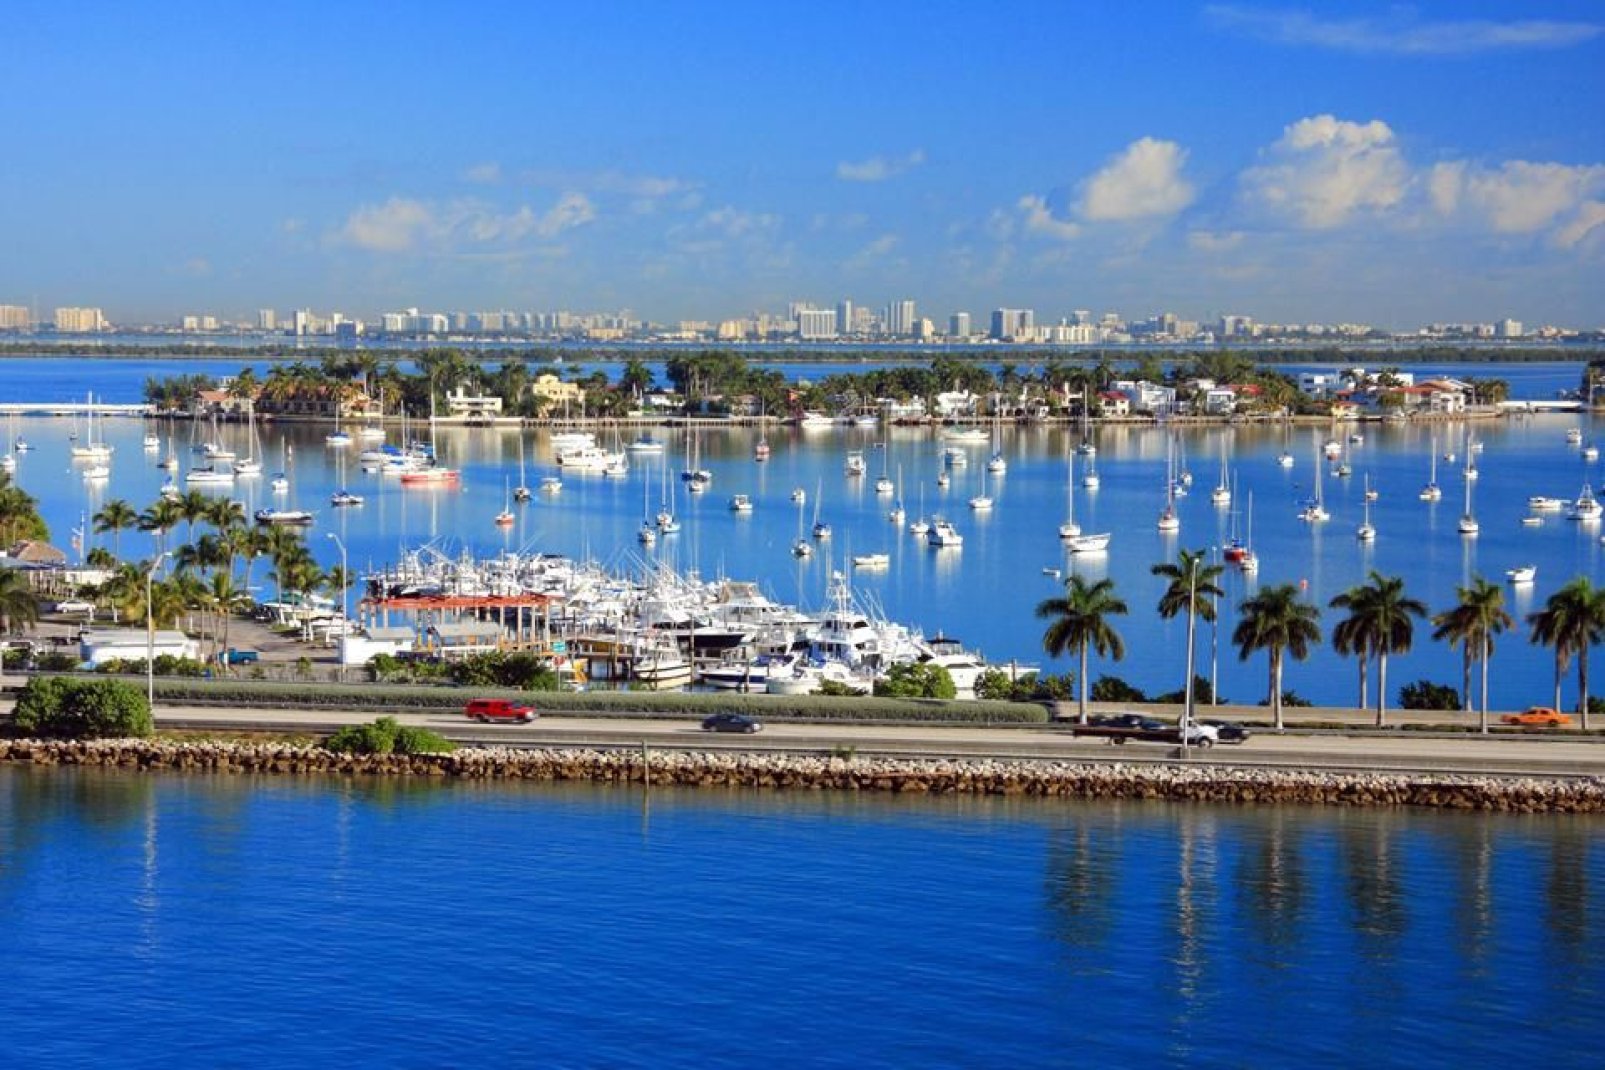 Le port de Miami est un centre de transit majeur à destination des Amériques. C'est aussi la capitale mondiale des croisières.